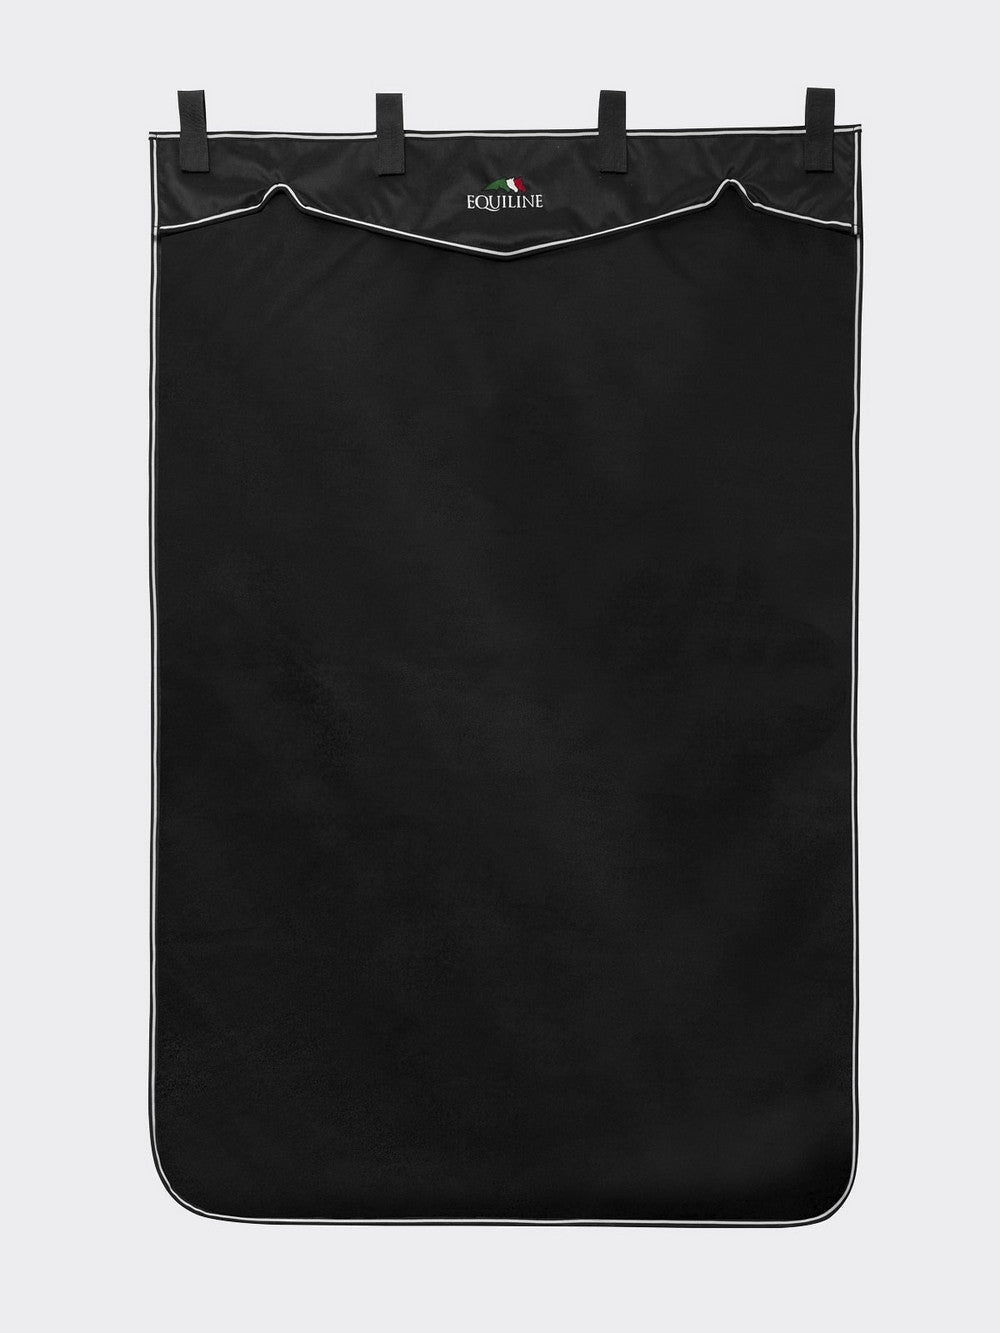 Equiline stalgordijn Wafe lang 200 x 130 cm zwart